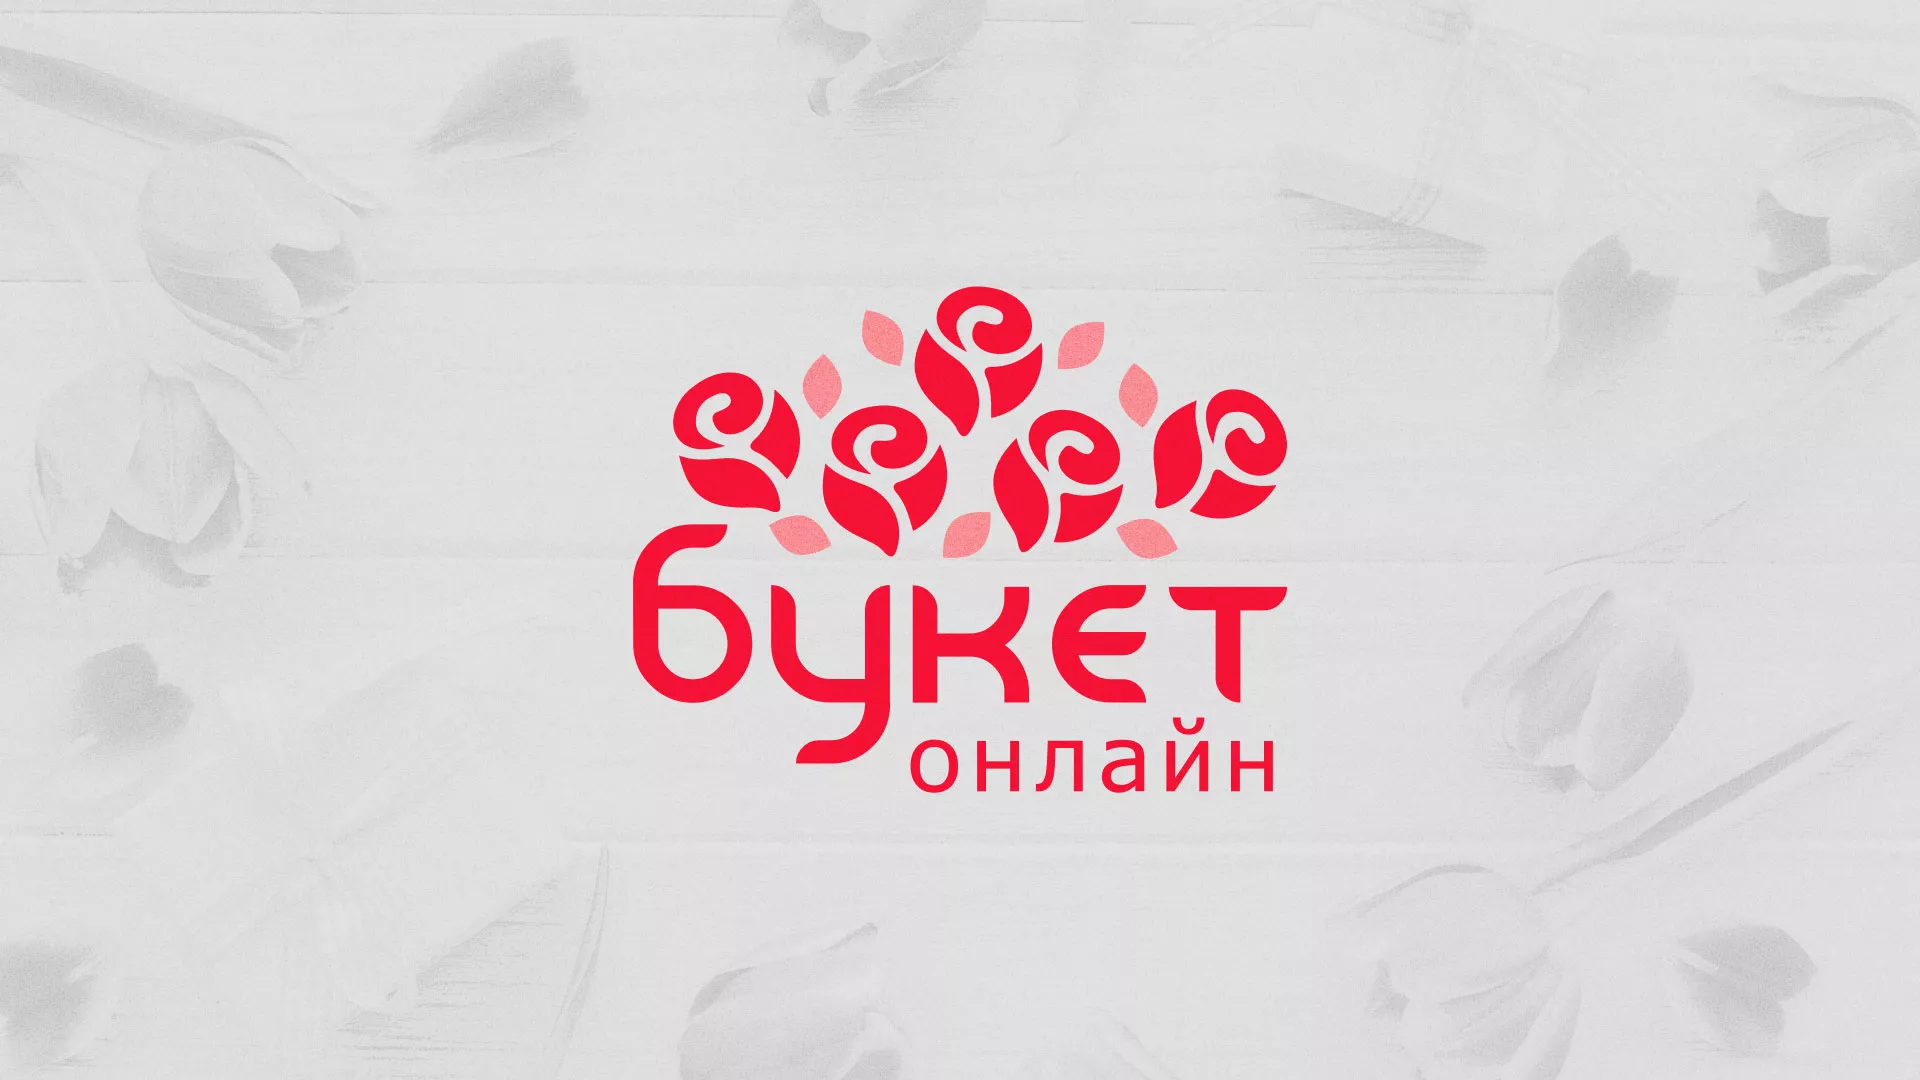 Создание интернет-магазина «Букет-онлайн» по цветам в Петропавловске-Камчатском